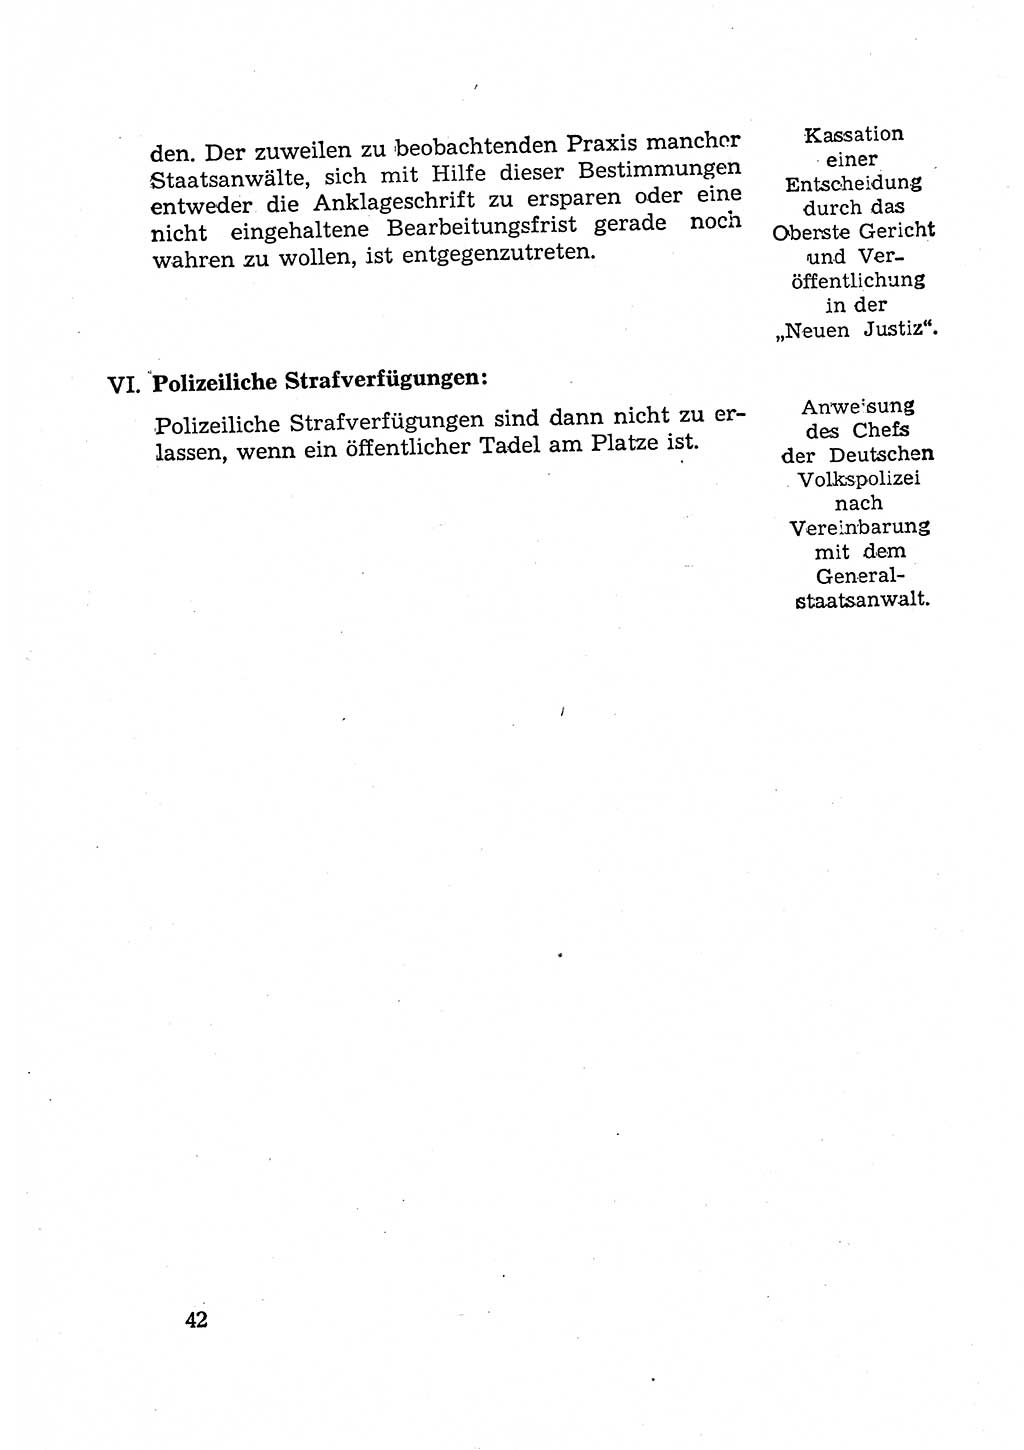 Bericht der Kommission zur Überprüfung der Anwendung der StPO (Strafprozeßordnung) [Deutsche Demokratische Republik (DDR)] 1956, Seite 42 (Ber. StPO DDR 1956, S. 42)